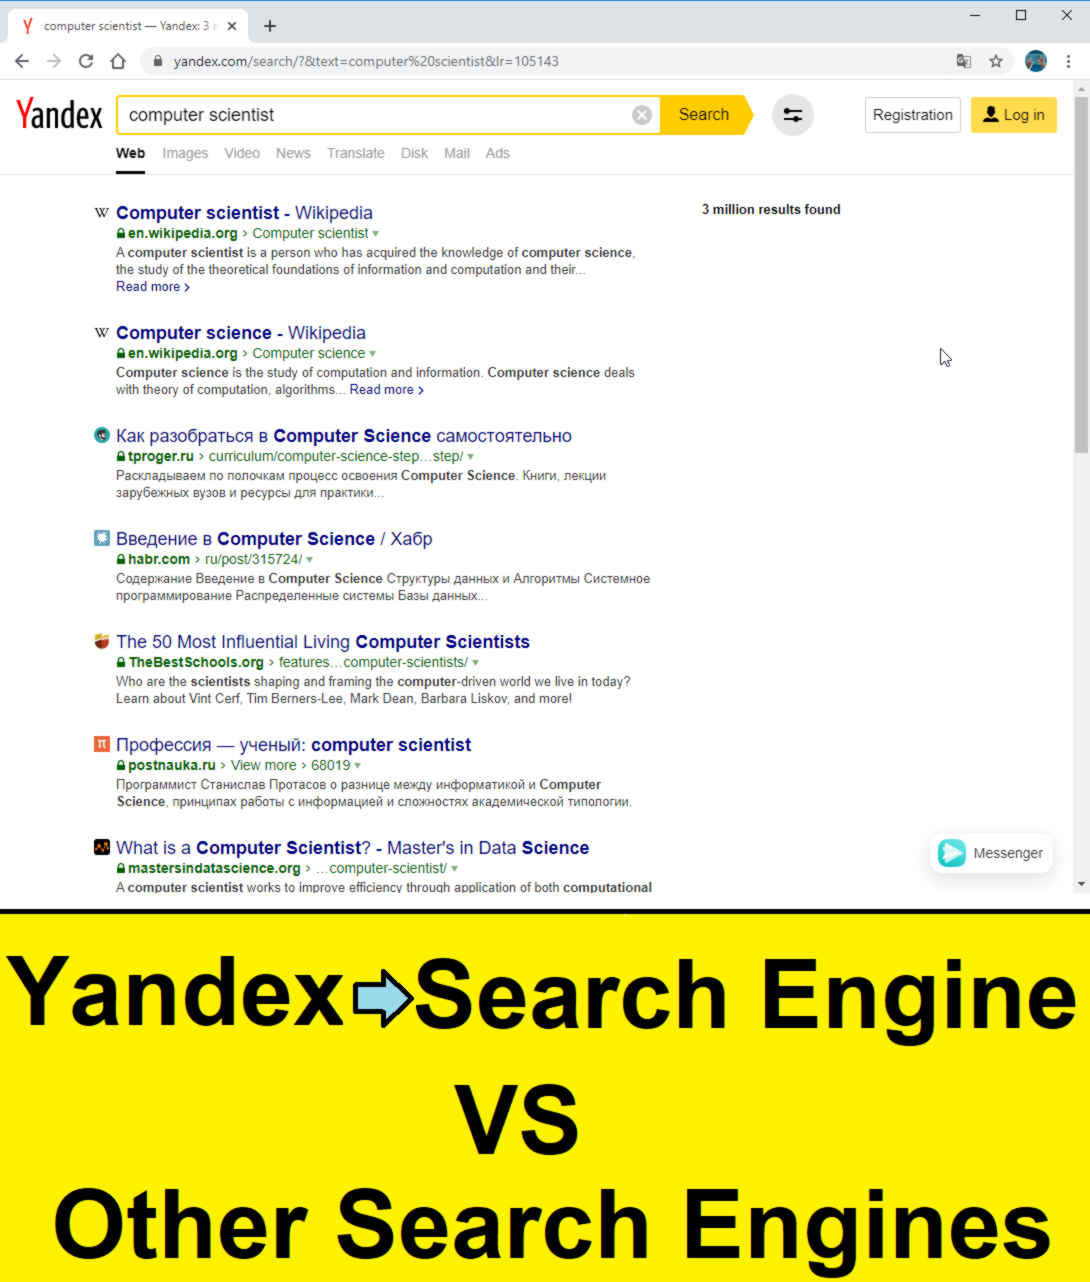 compare yandex search engine